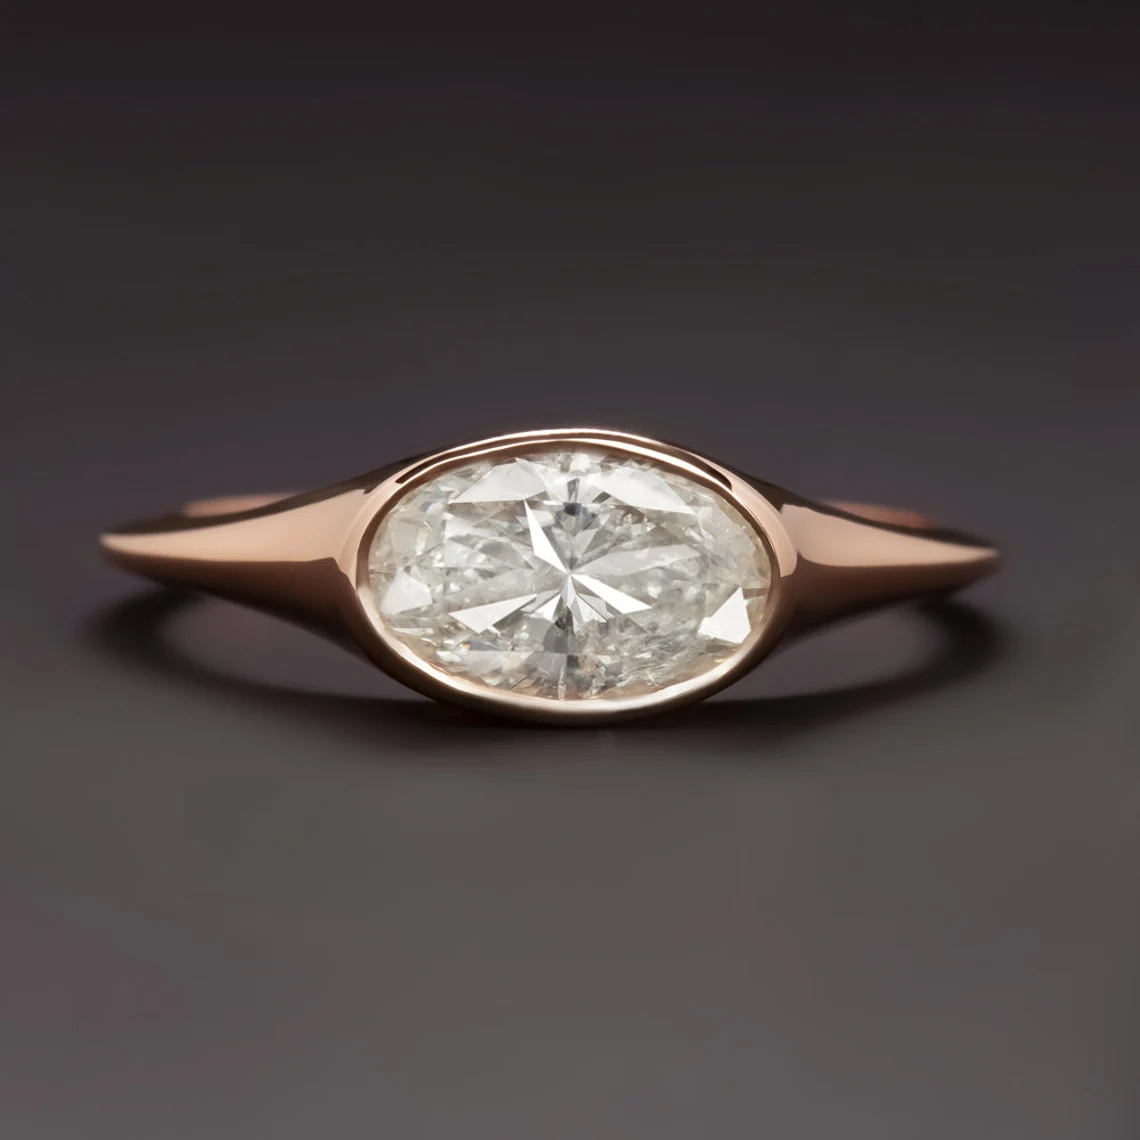 Bezel set diamond ring in rose gold